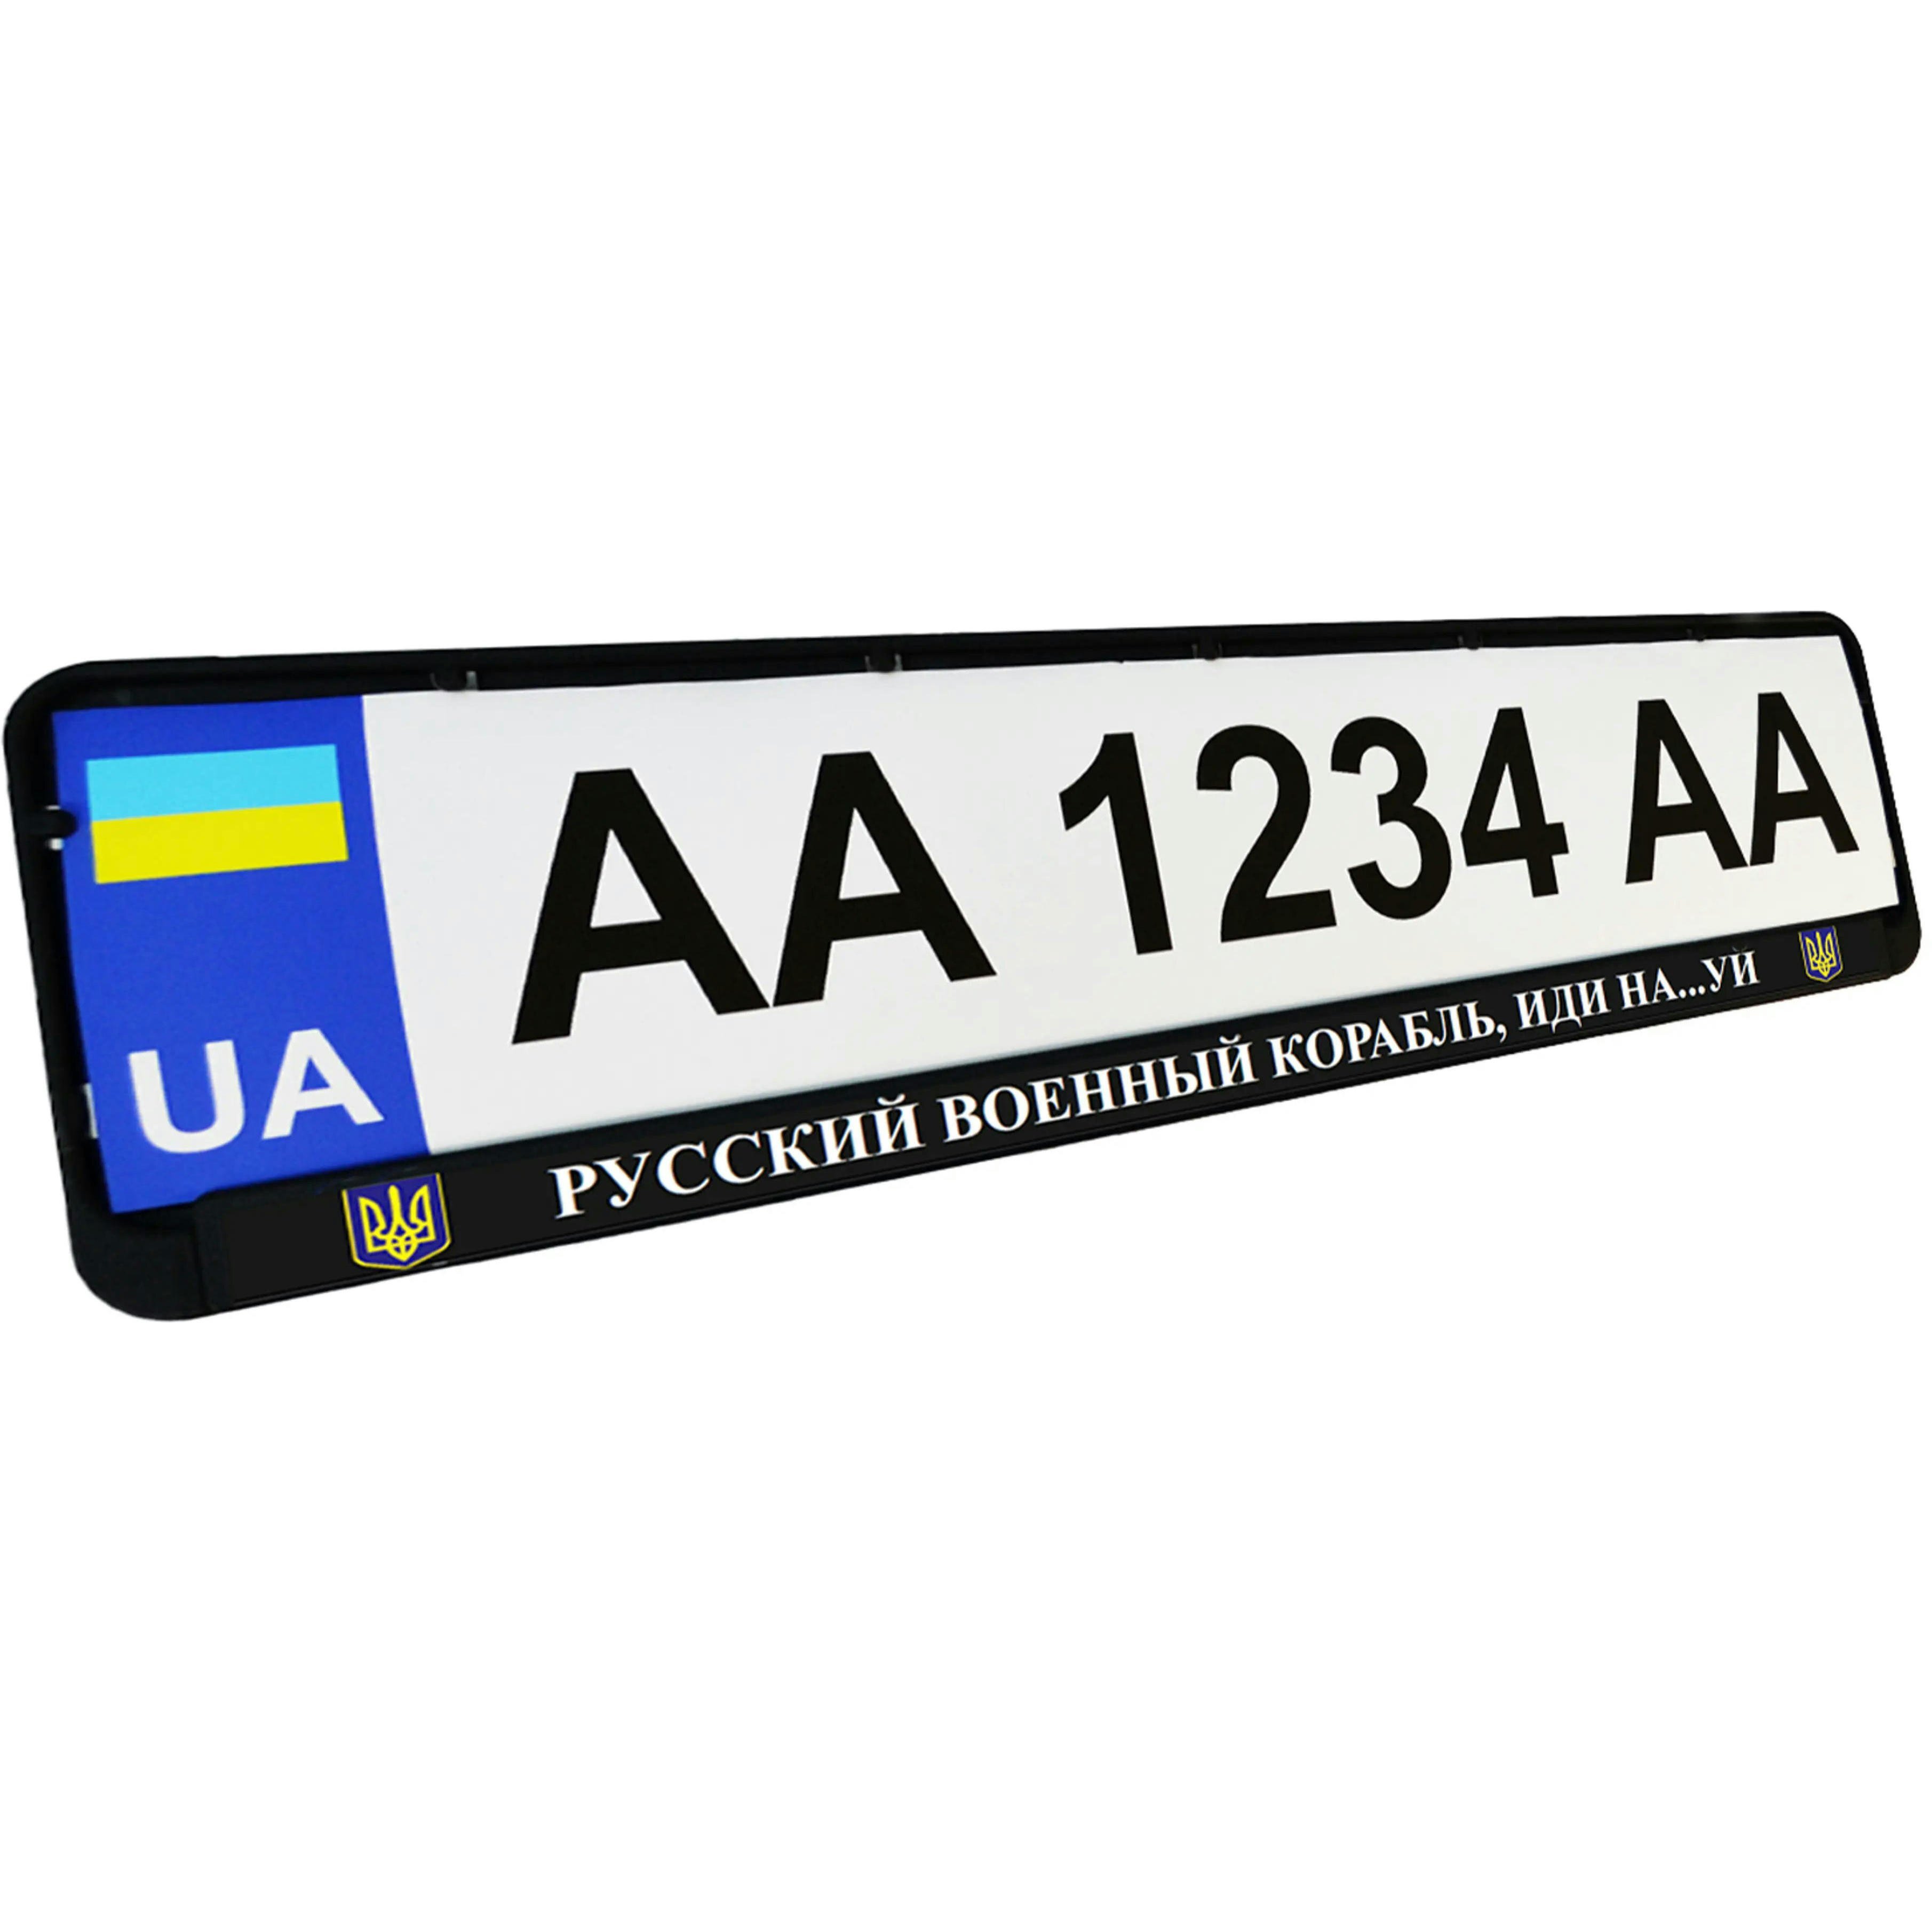 Рамка номерного знака Poputchik пластиковая патриотическая Русский военный корабль, иди на…уй (24-266-IS) фото 1